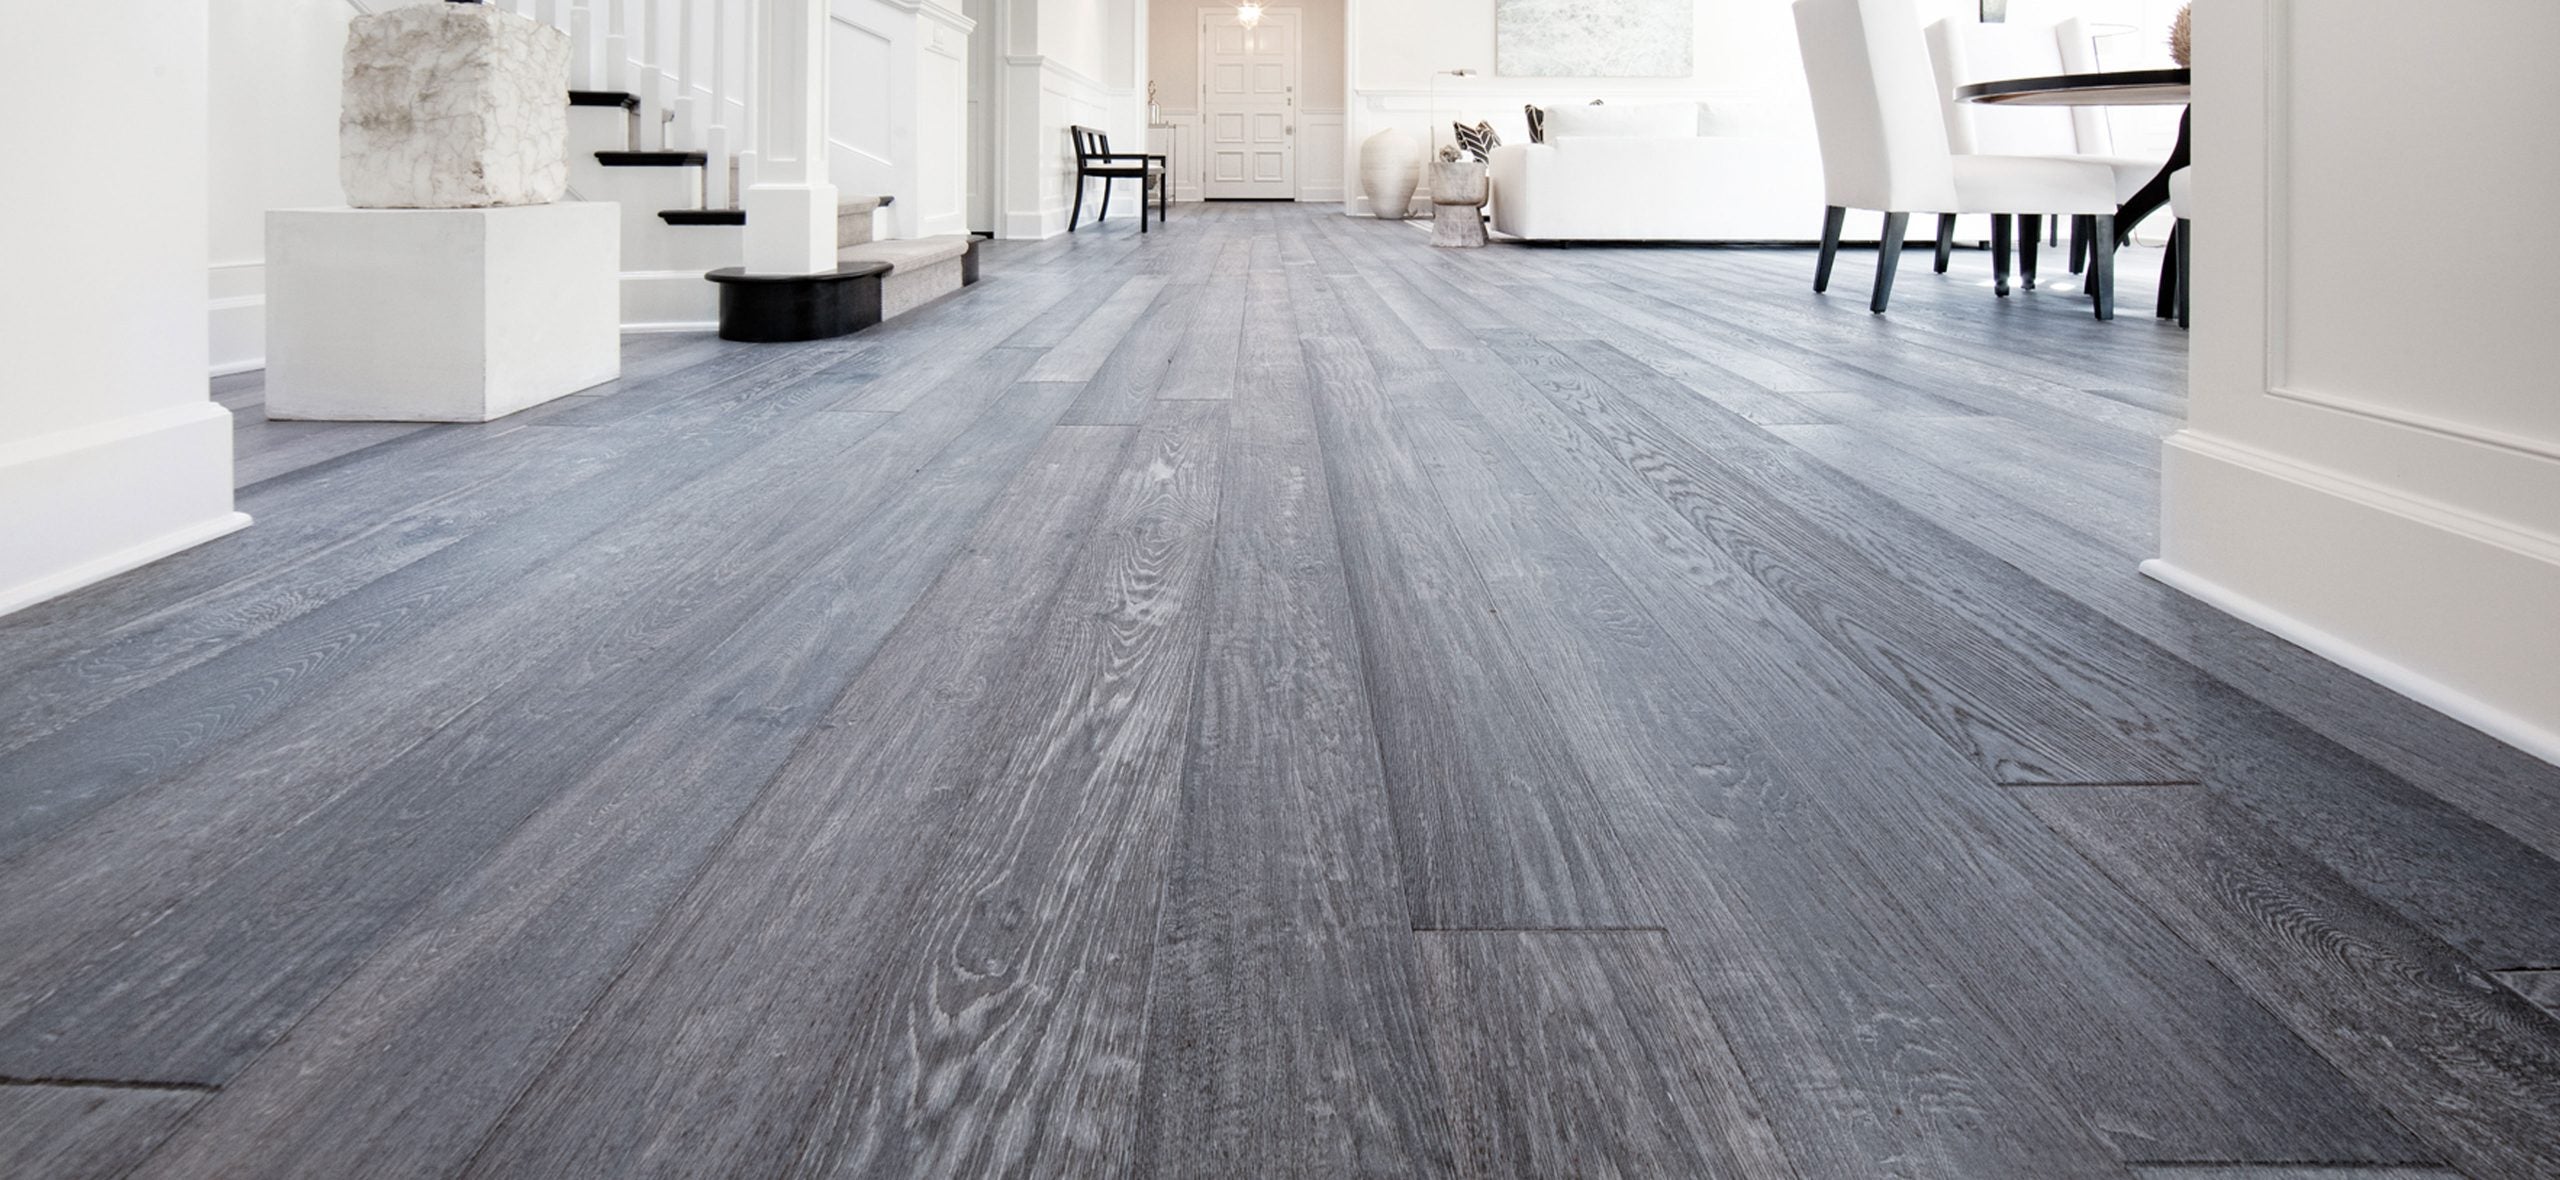 Teka Hardwood Flooring: Three Decades of Excellence in Flooring